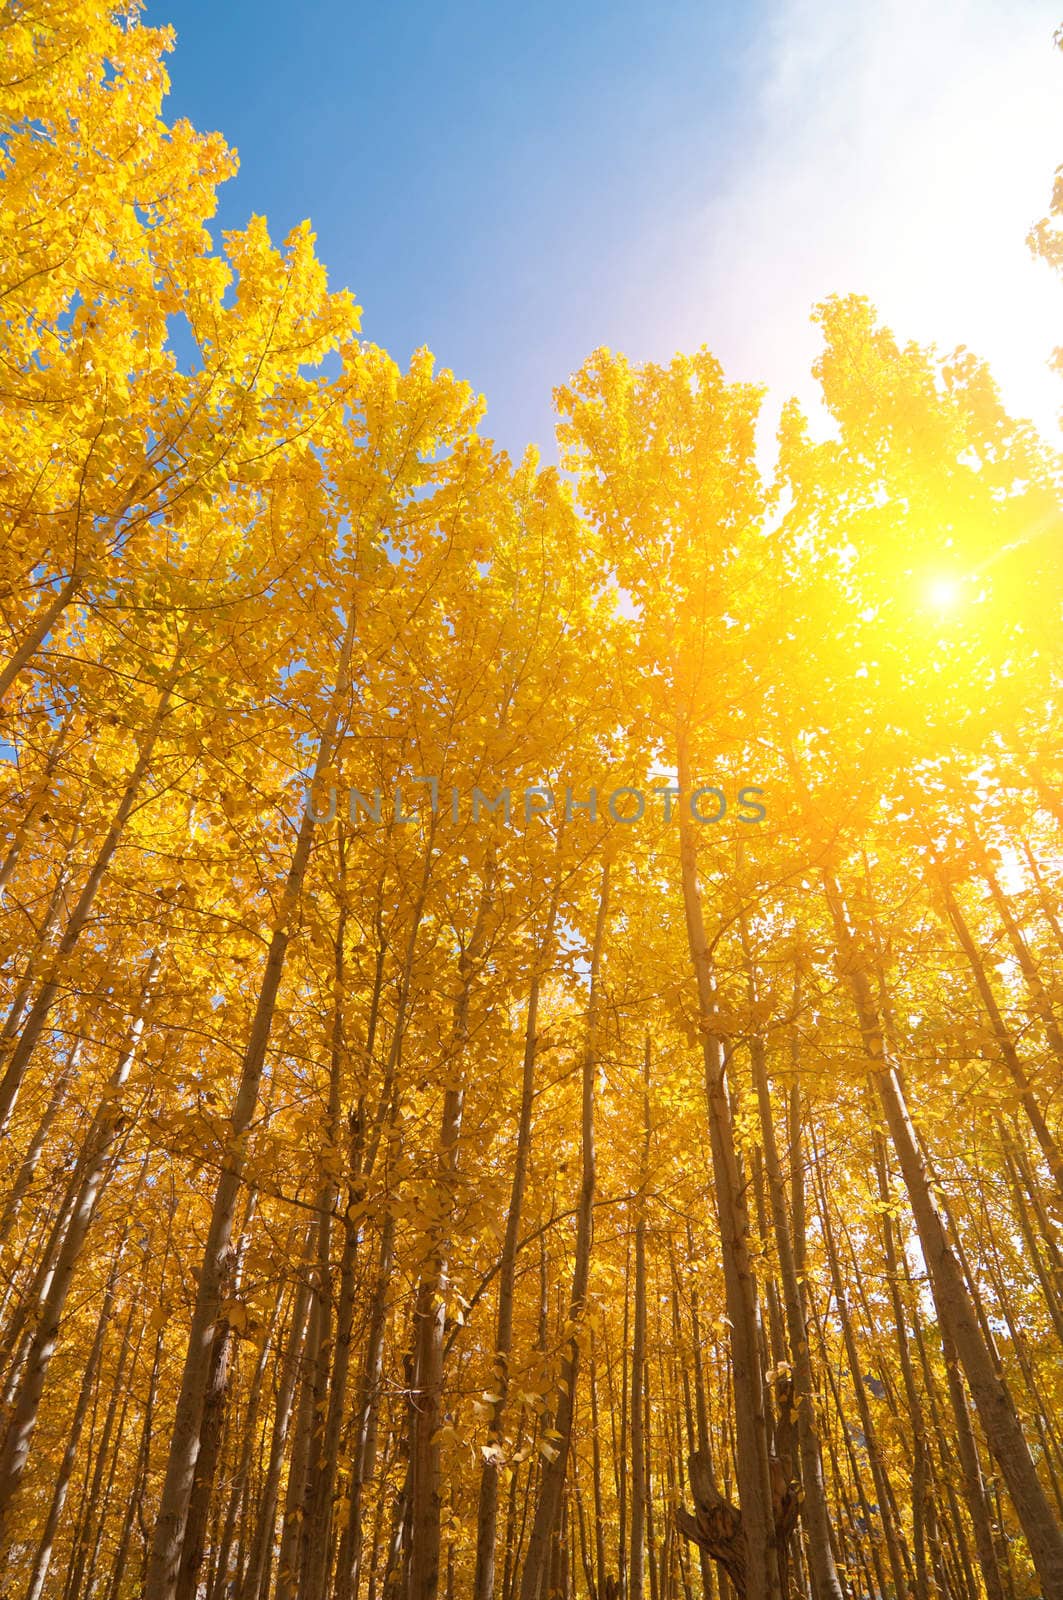 Aspen Trees in fall seasons by szefei